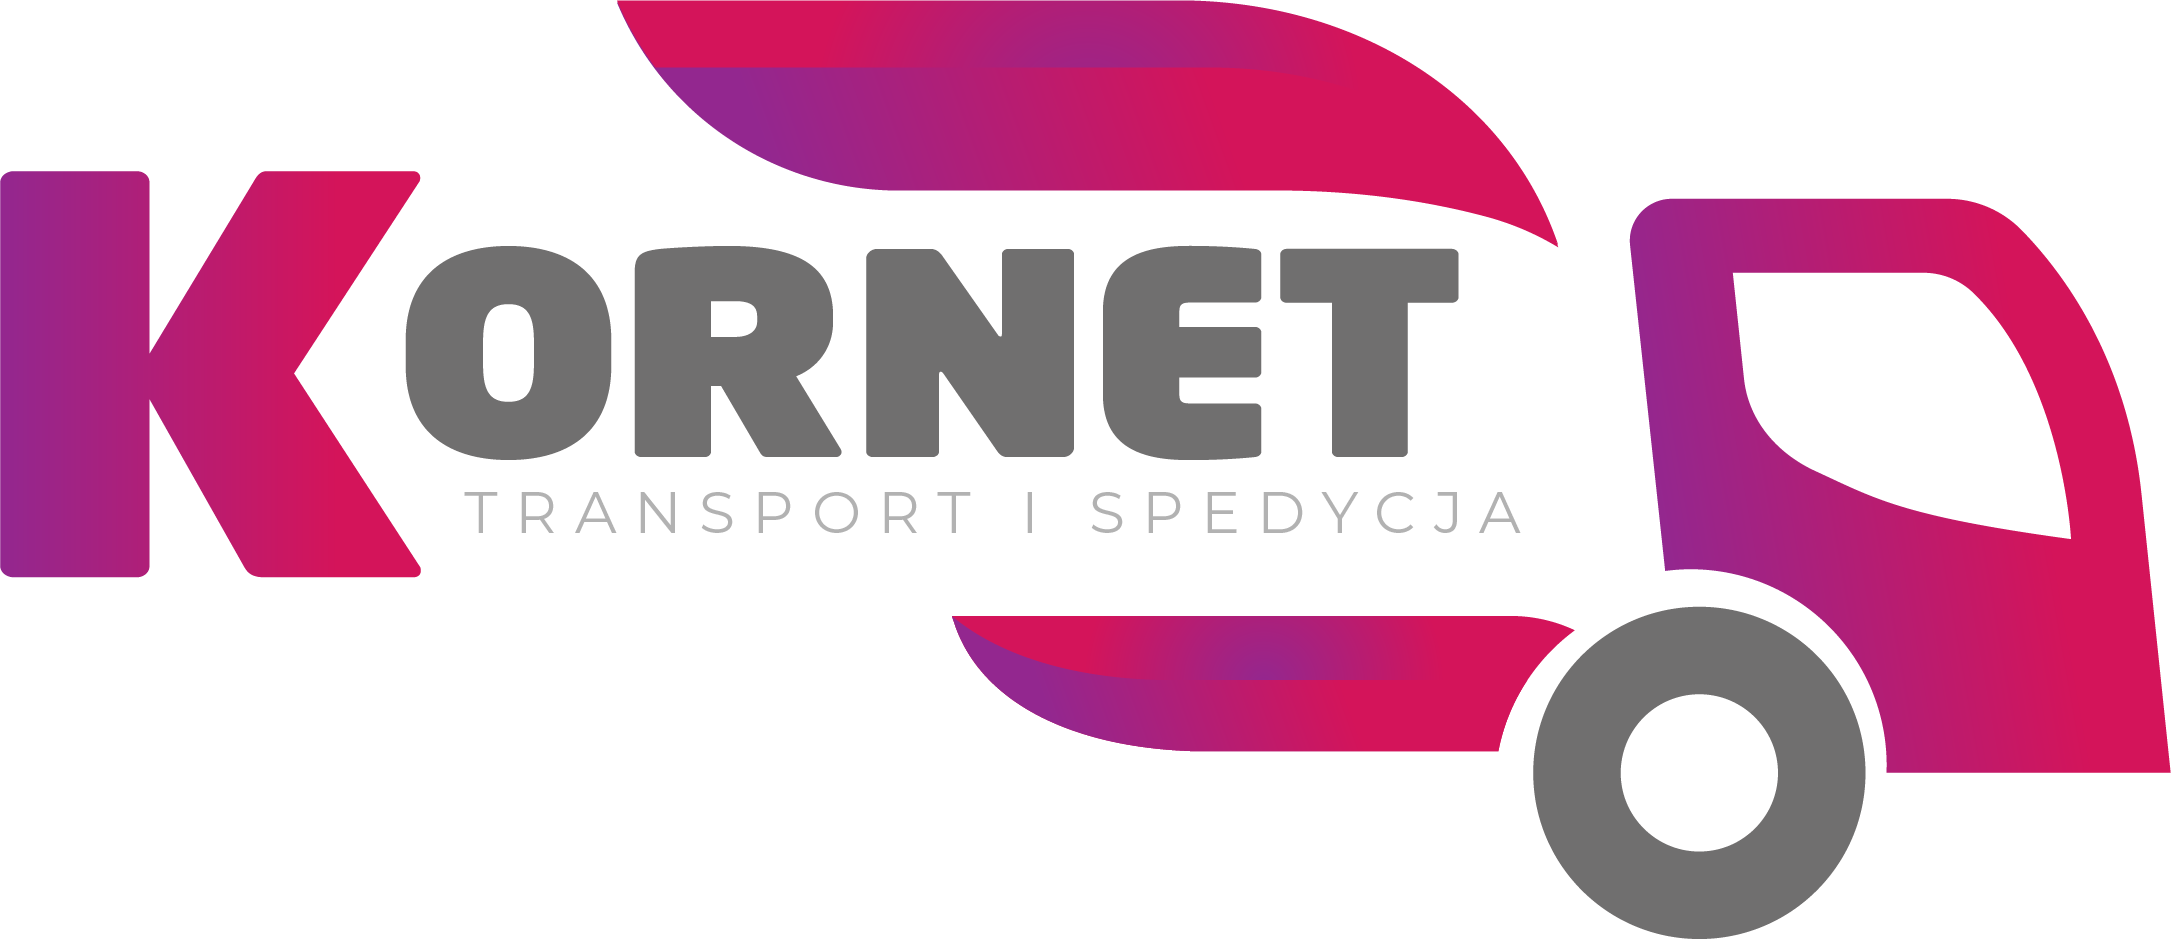 Spedycja i transport międzynarodowy - Kornet sp. z o.o. 